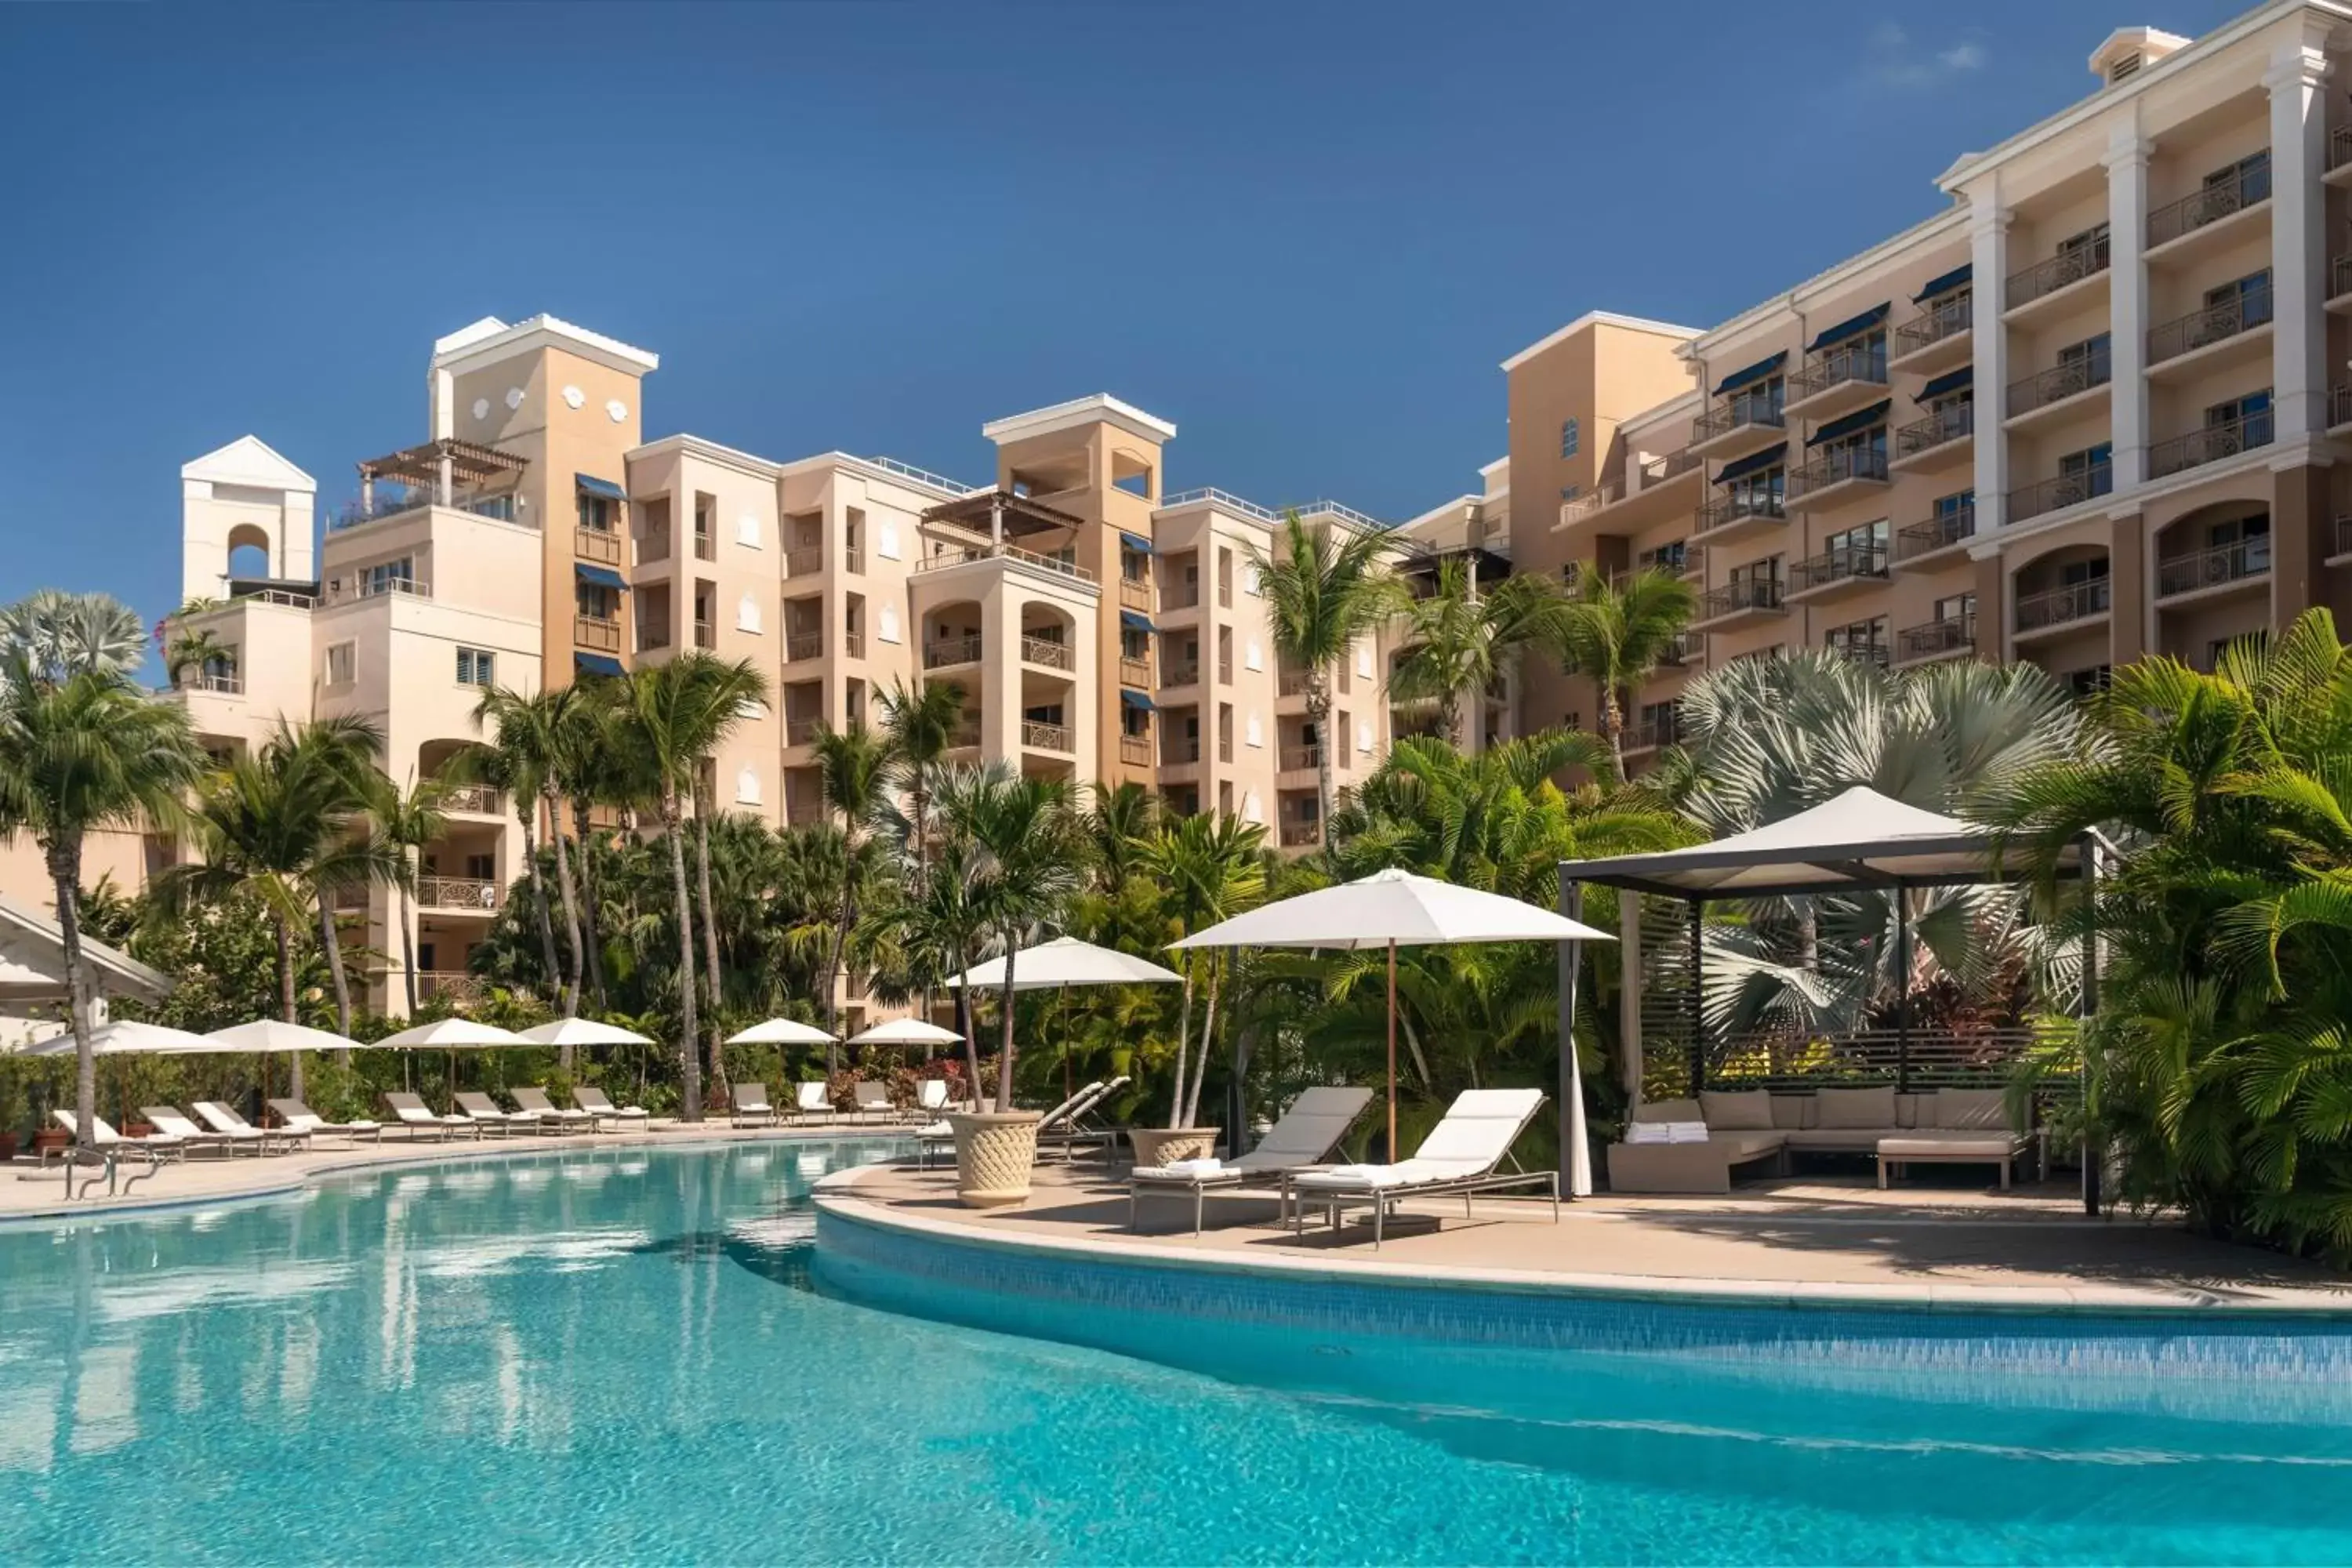 Swimming Pool in The Ritz-Carlton, Grand Cayman